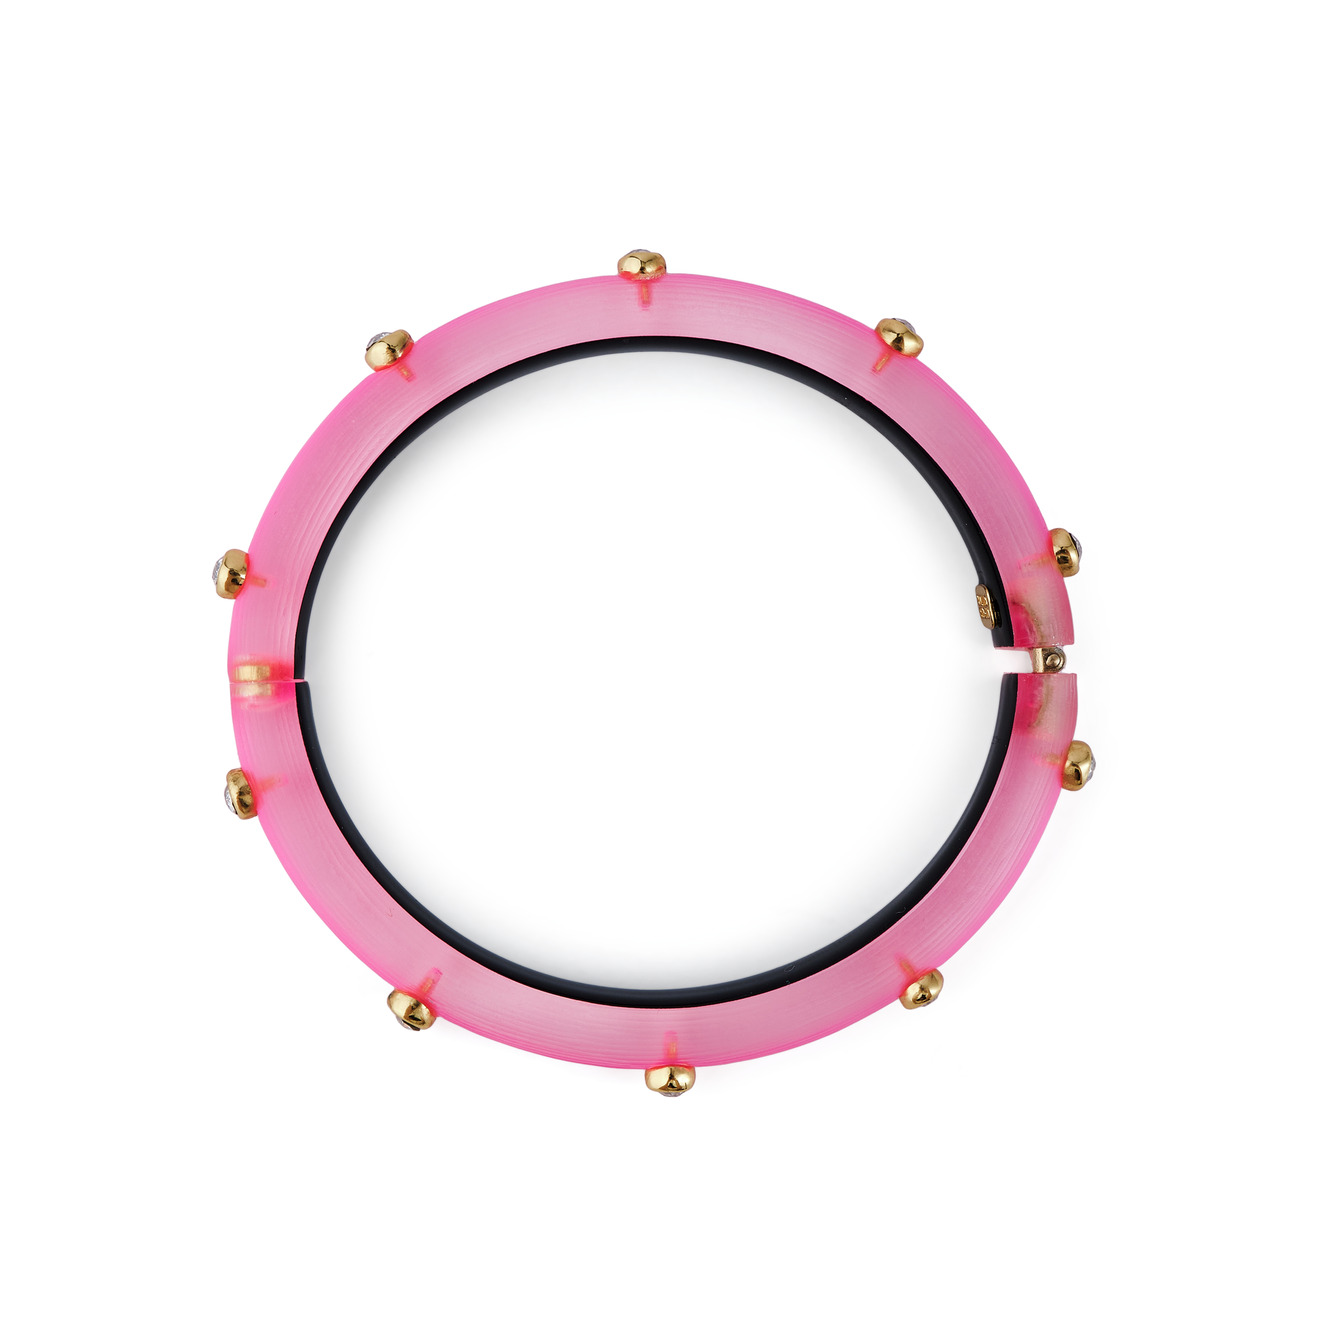 Alexis Bittar Тонкий ярко-розовый браслет из люцита с кристаллами